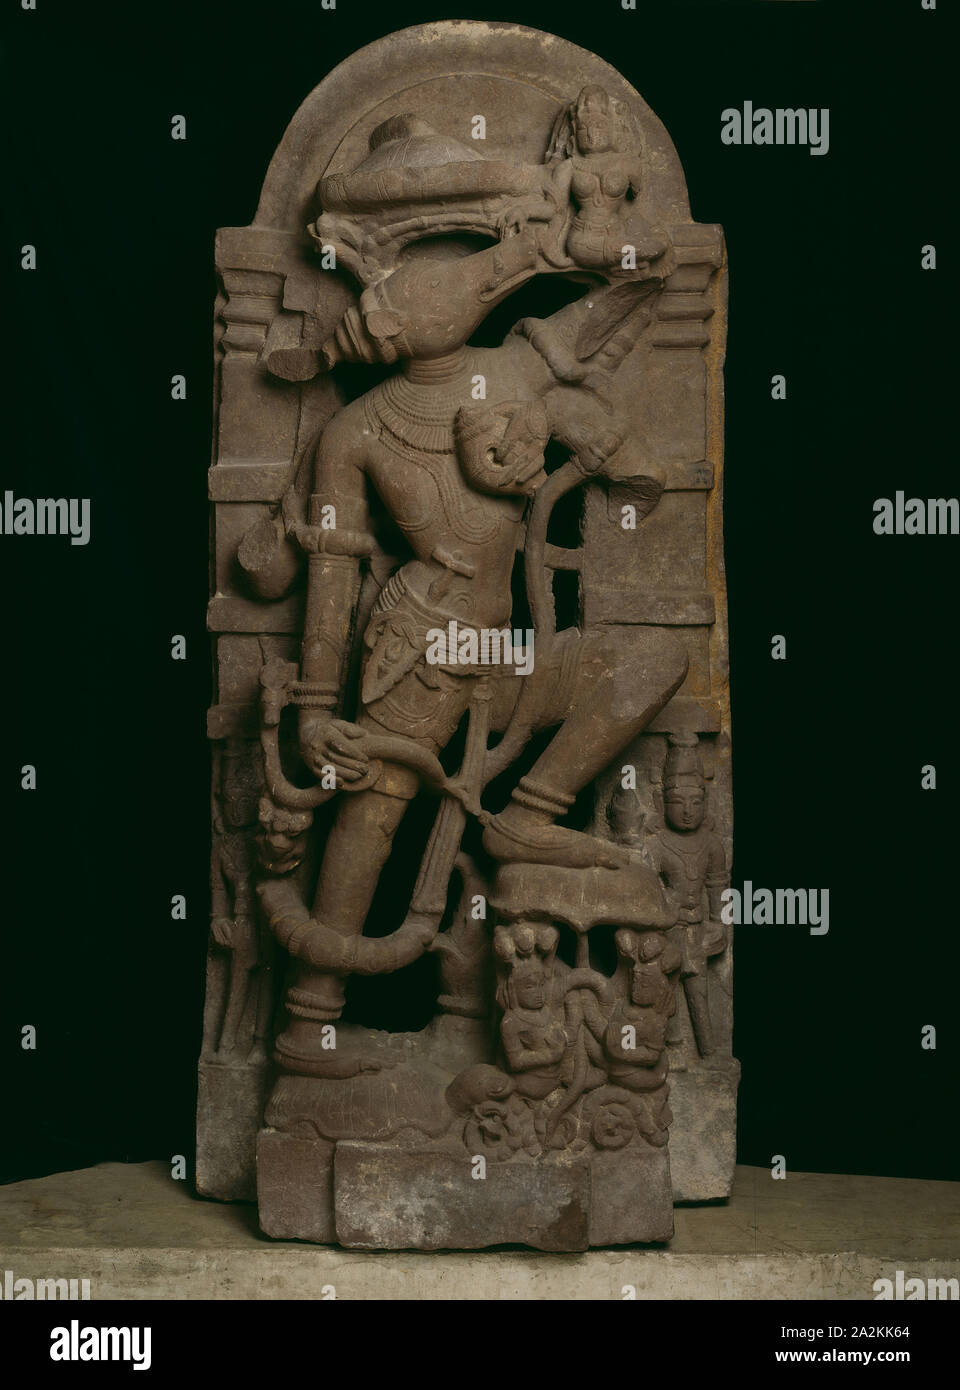 Incarnation de Dieu sanglier Varaha (Vishnu) Levage de la déesse Terre Bhudevi, 11e siècle, l'Inde, Rajasthan, Rajasthan, grès rouge, 132,1 x 58,5 x 29,3 cm (52 x 23 x 11 1/2 po Banque D'Images